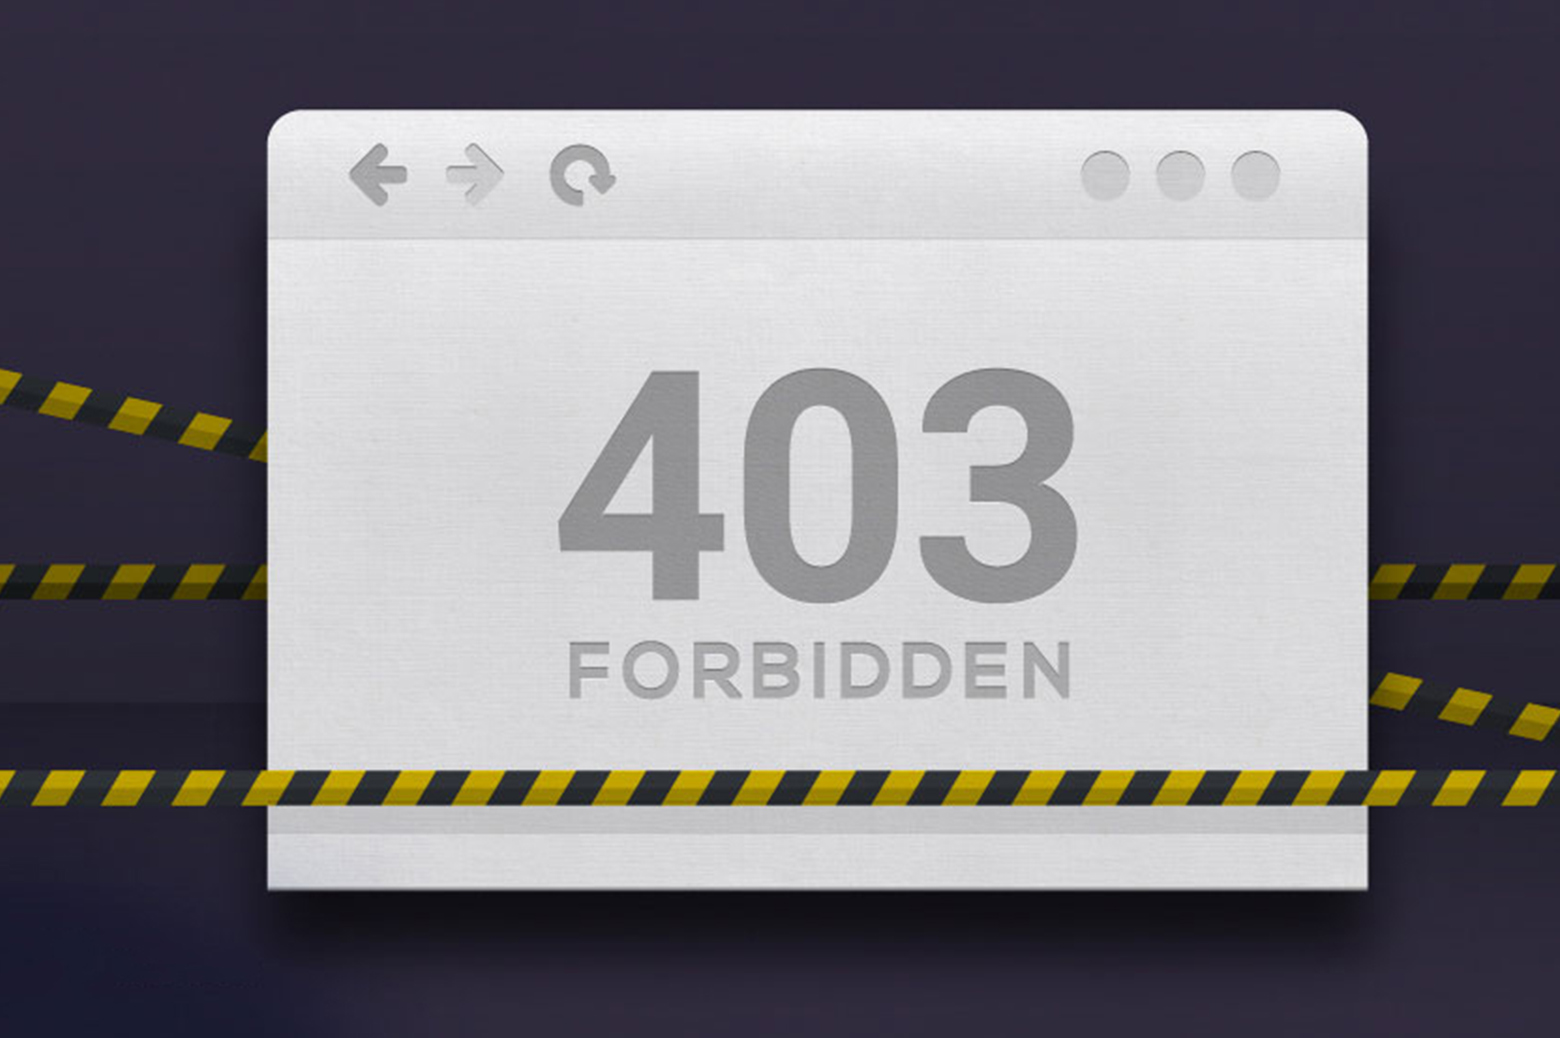 403 error message